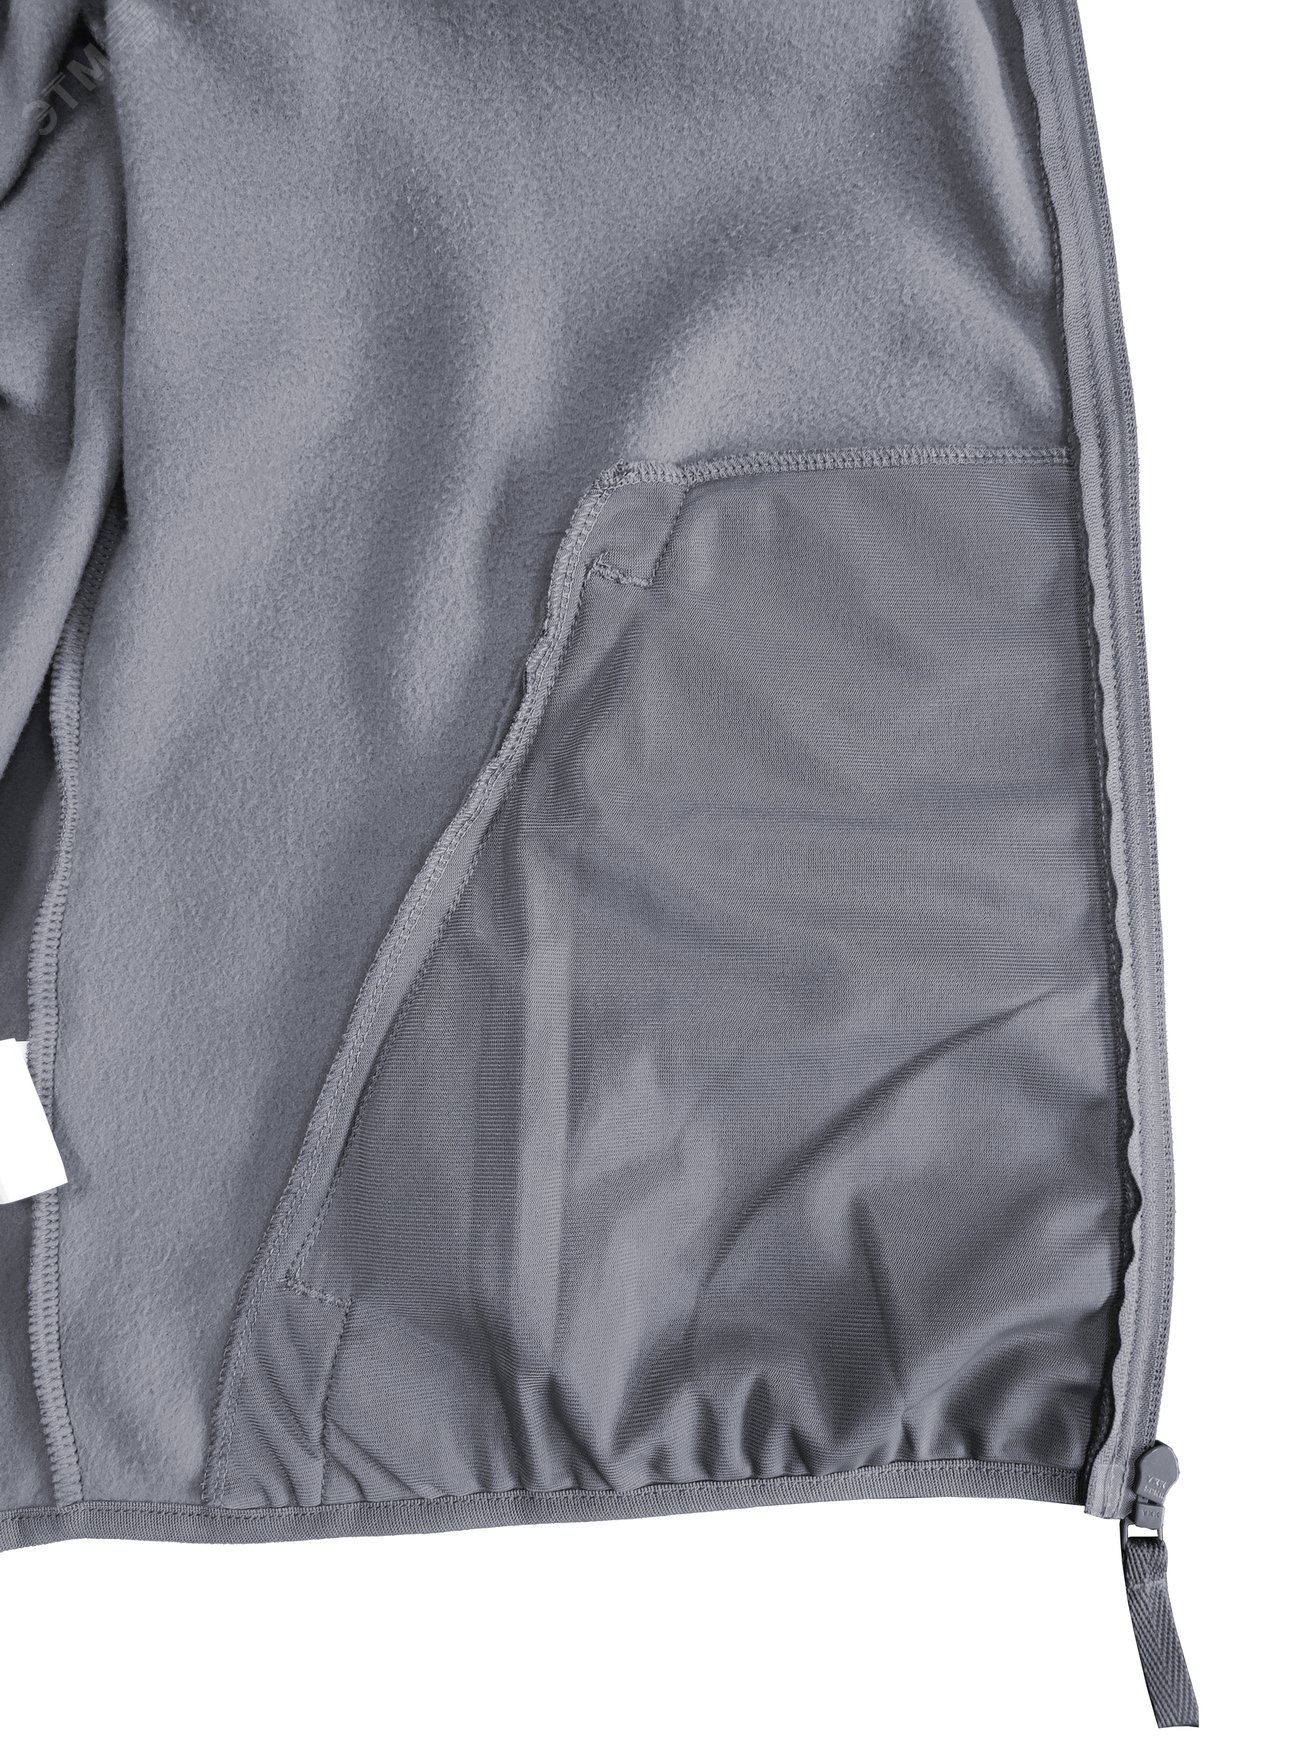 Куртка флисовая арт. JF-01 на молнии цв. серый 60-62 р. 2 ХL 142302 Эталон-Спецодежда - превью 10